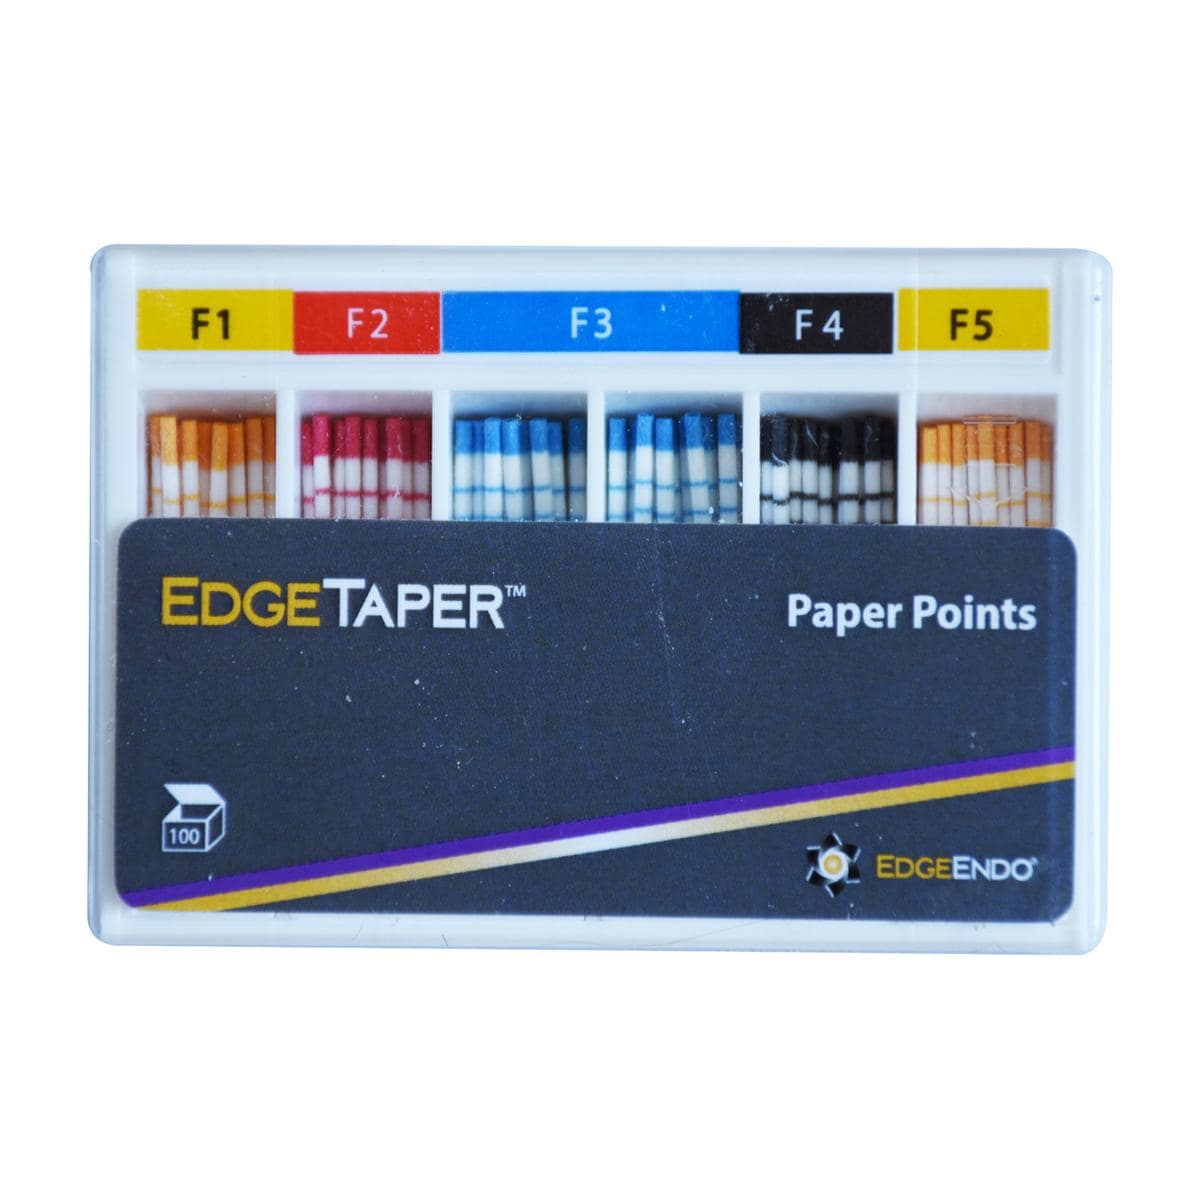 Pointes en papier EdgeTaper - Assortiment - F1 - F5, 100 pcs